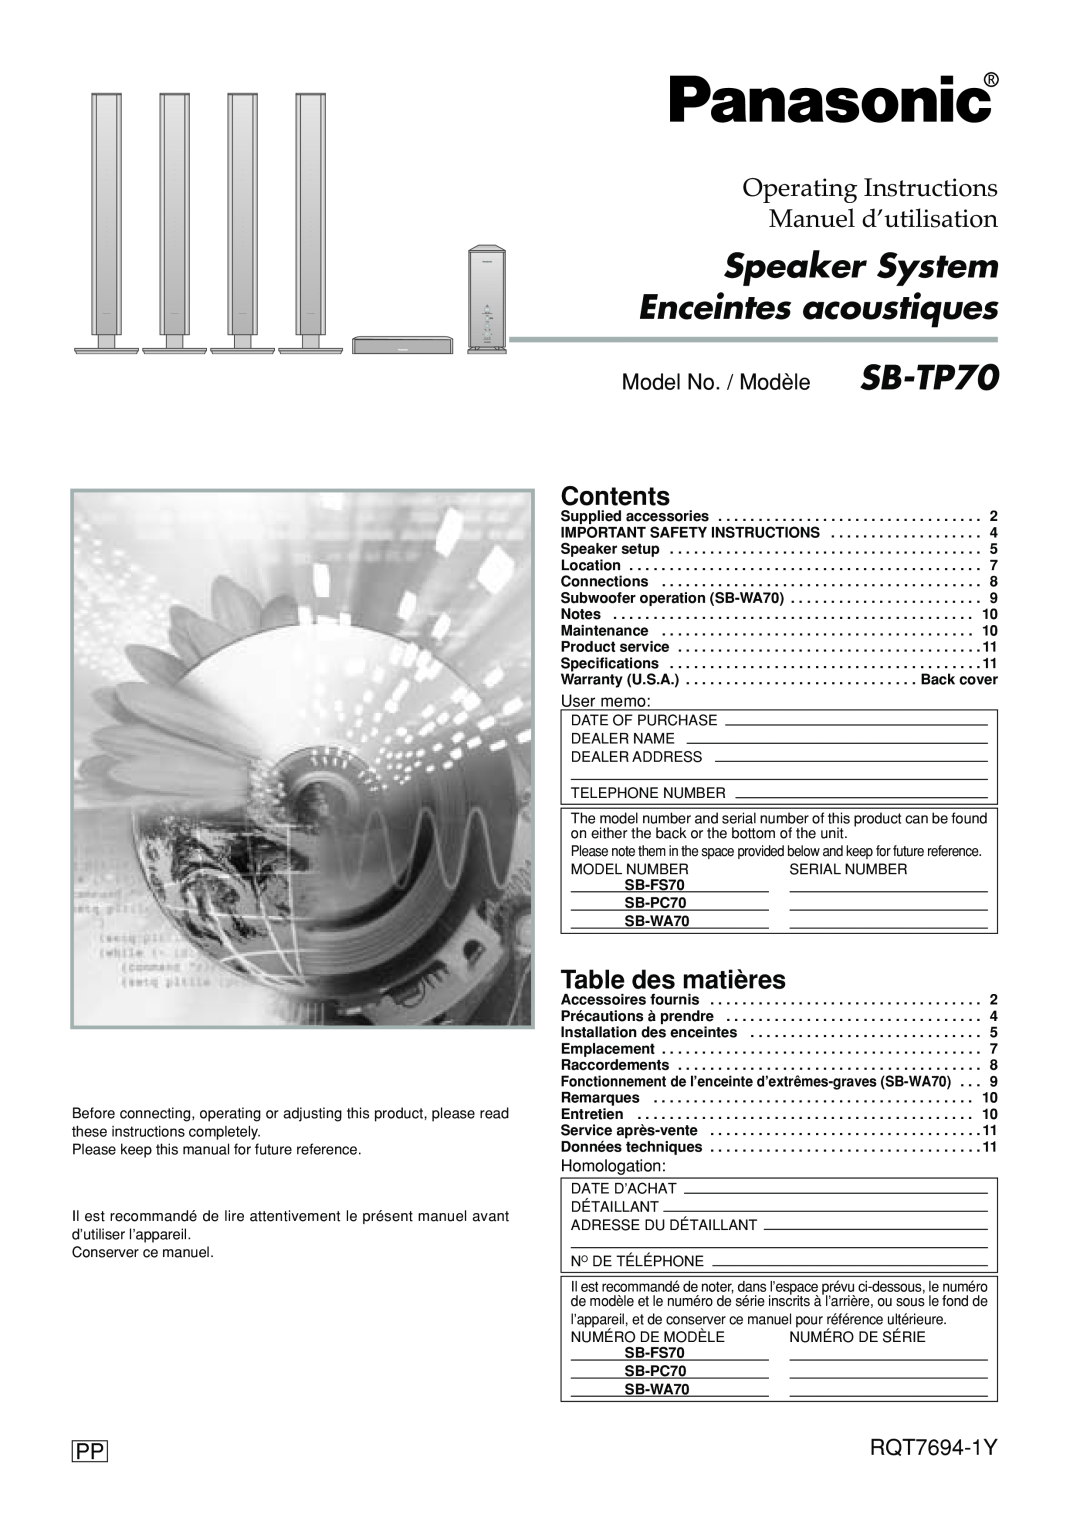 Panasonic manuel dutilisation Contents, Table des matières, Model No. / Modèle SB-TP70, RQT7694-1Y, User memo 